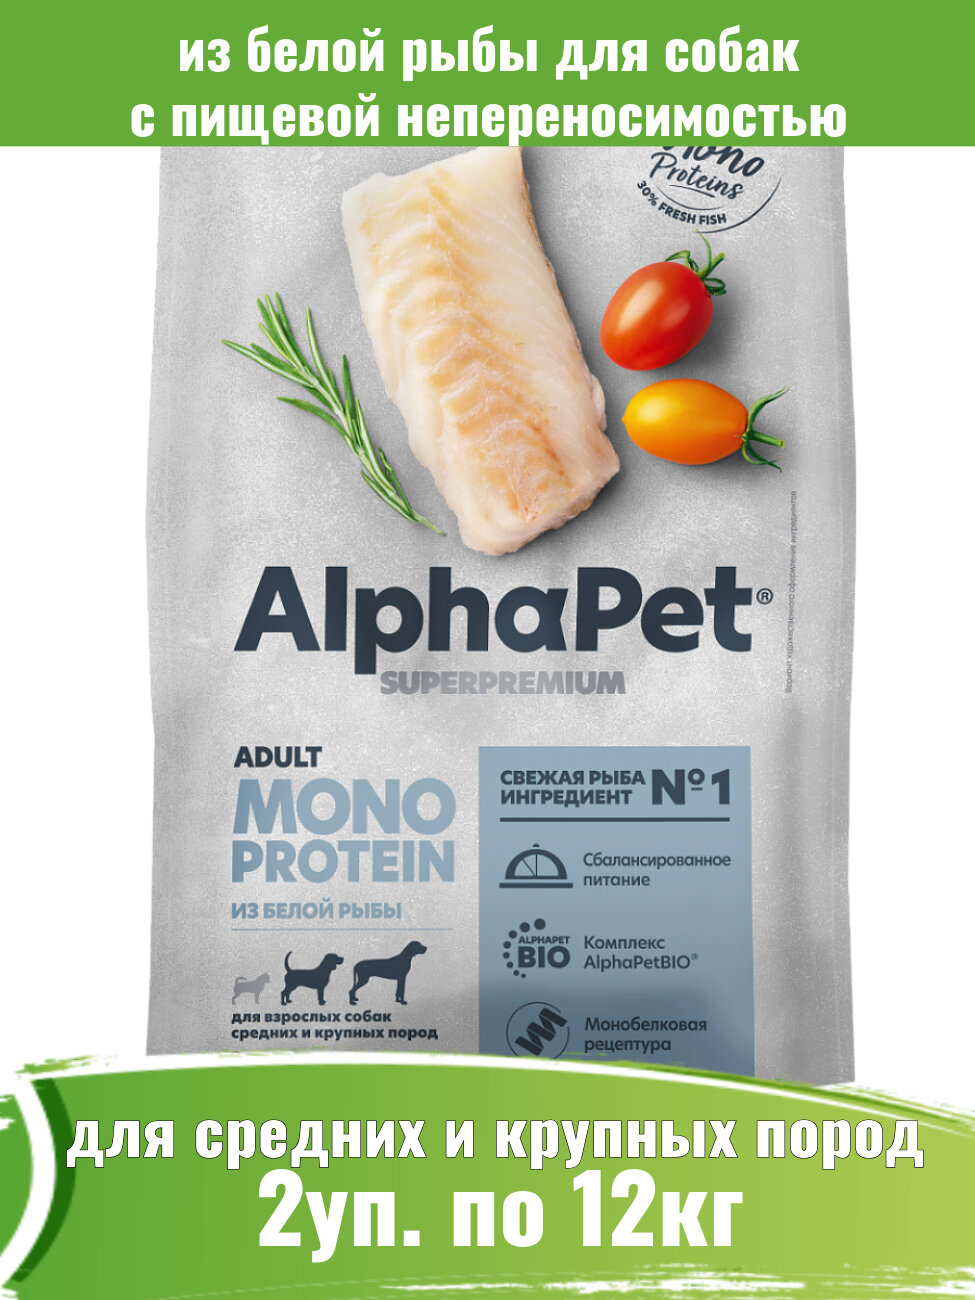 AlphaPet Superpremium Monoprotein 2шт по 12кг корм из белой рыбы для собак средних и крупных пород